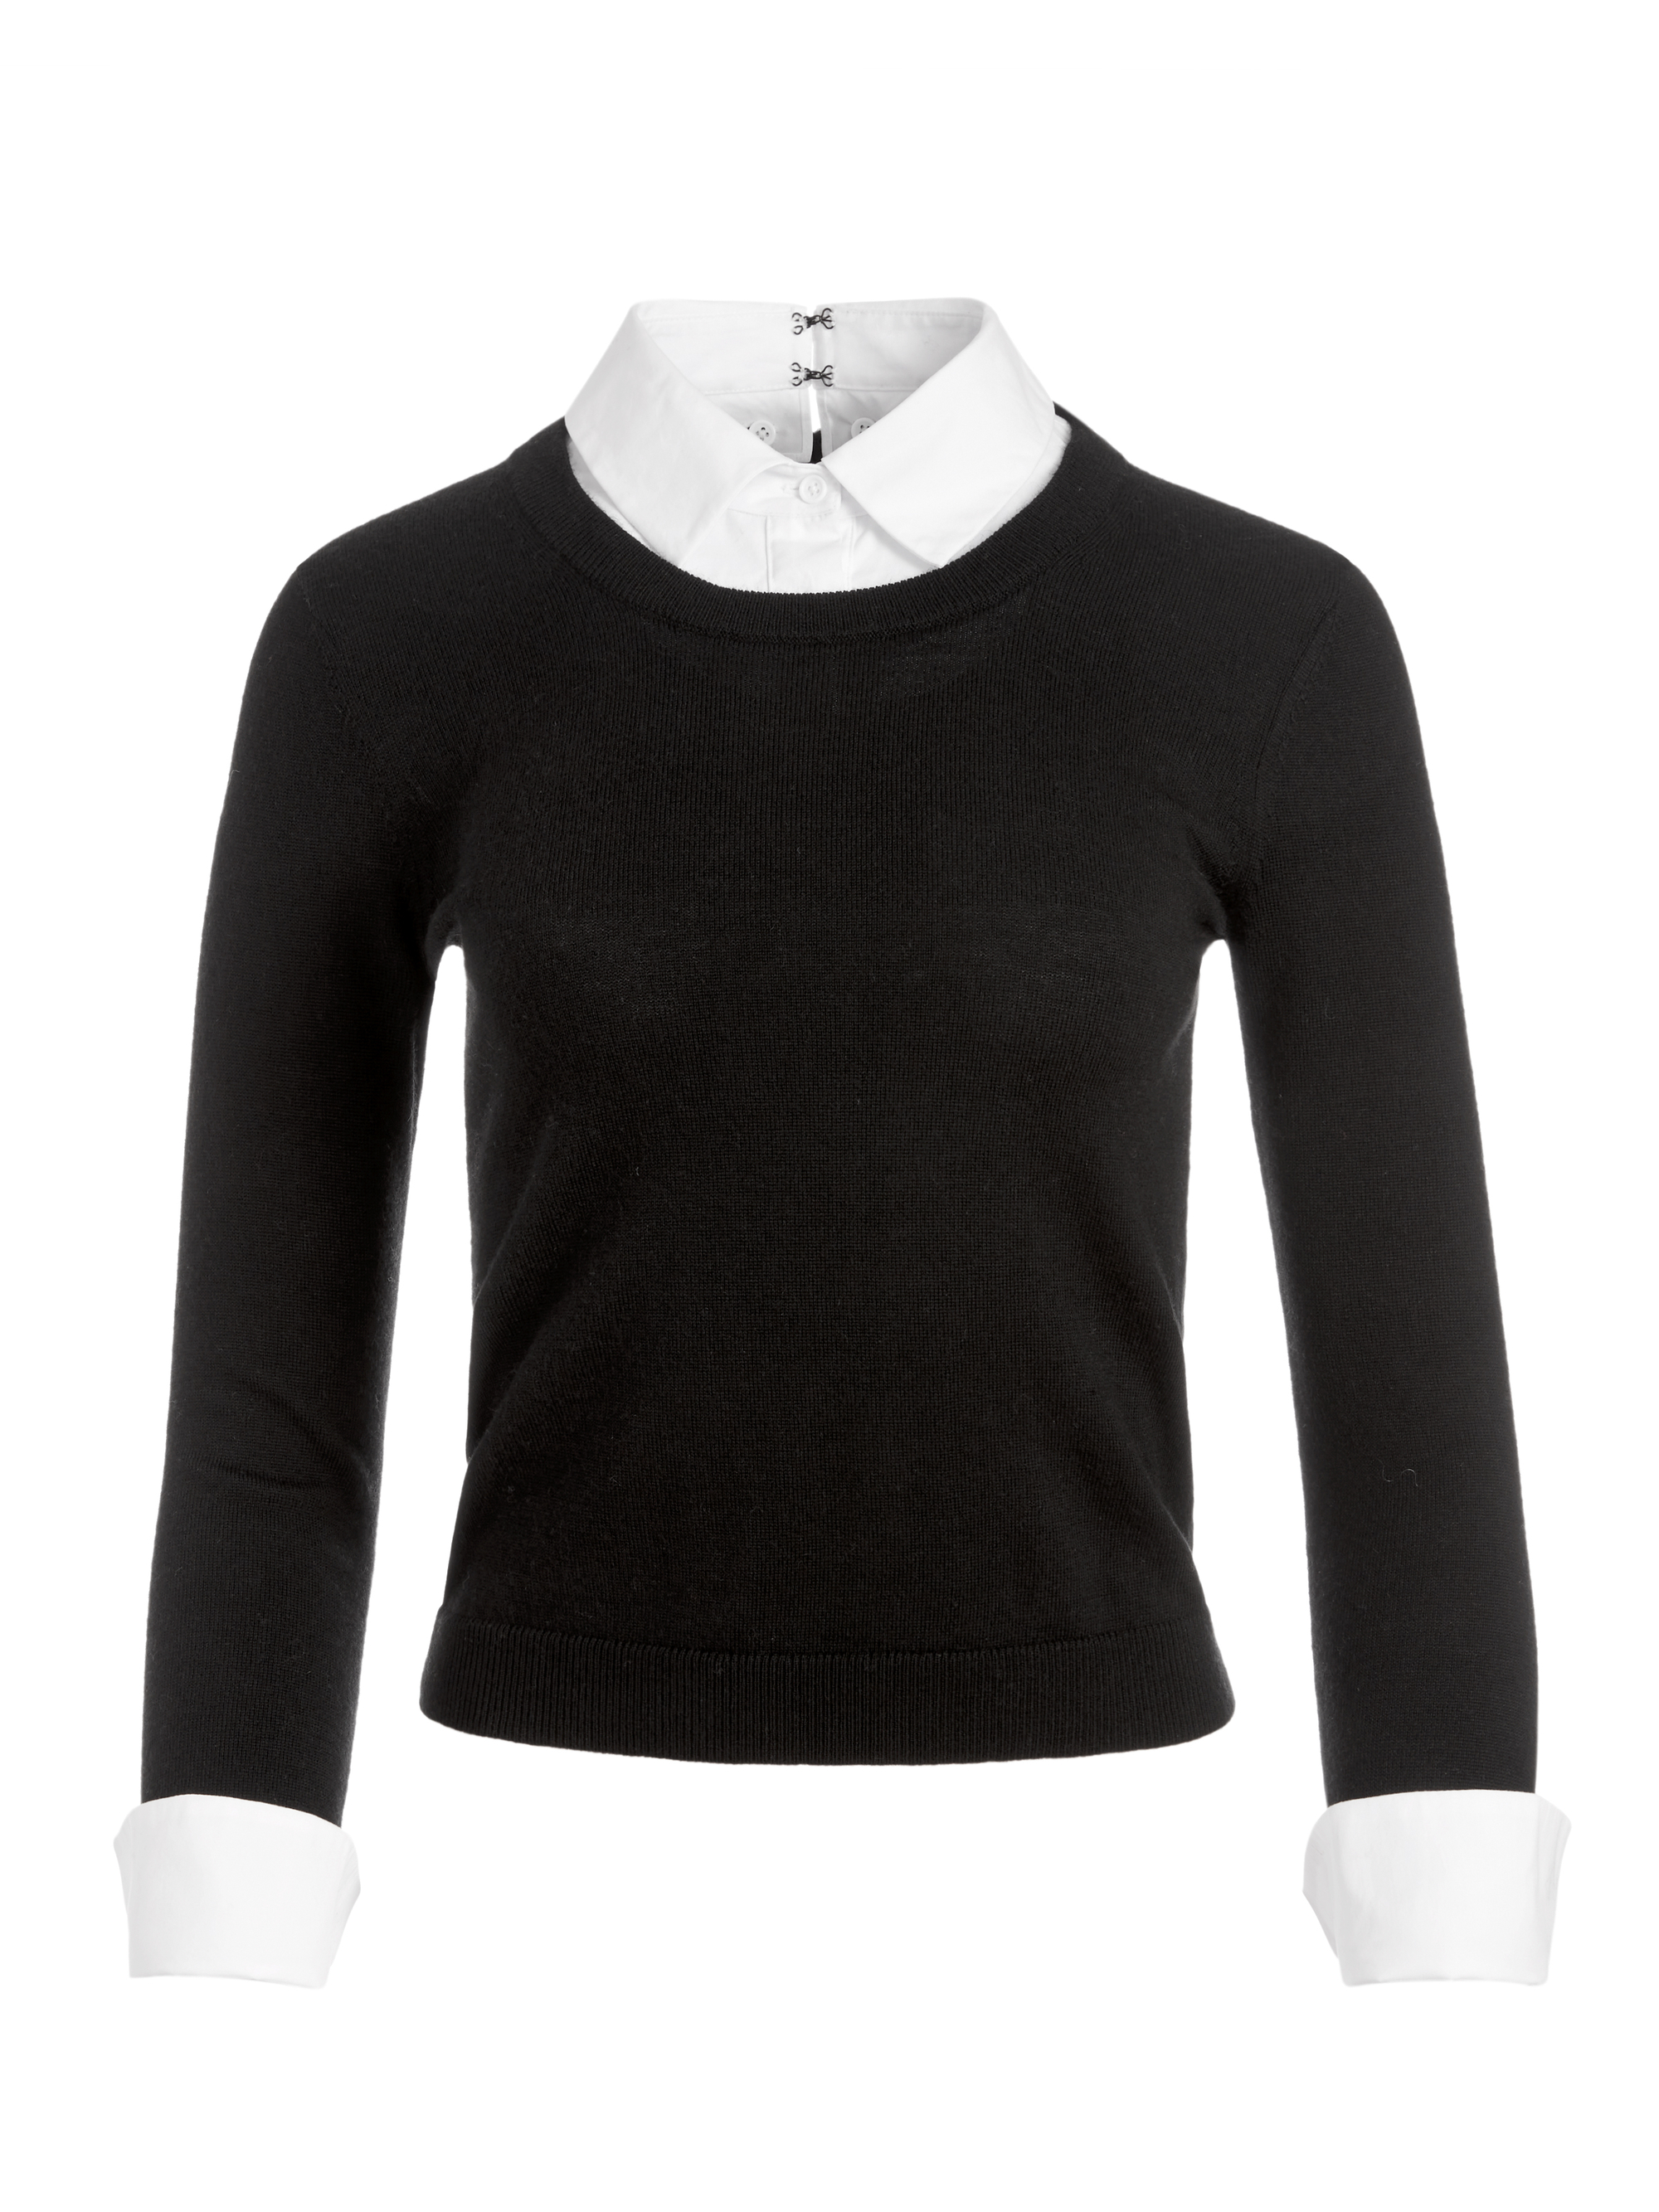 Porla Collared Sweater In Black/white | Alice And Olivia